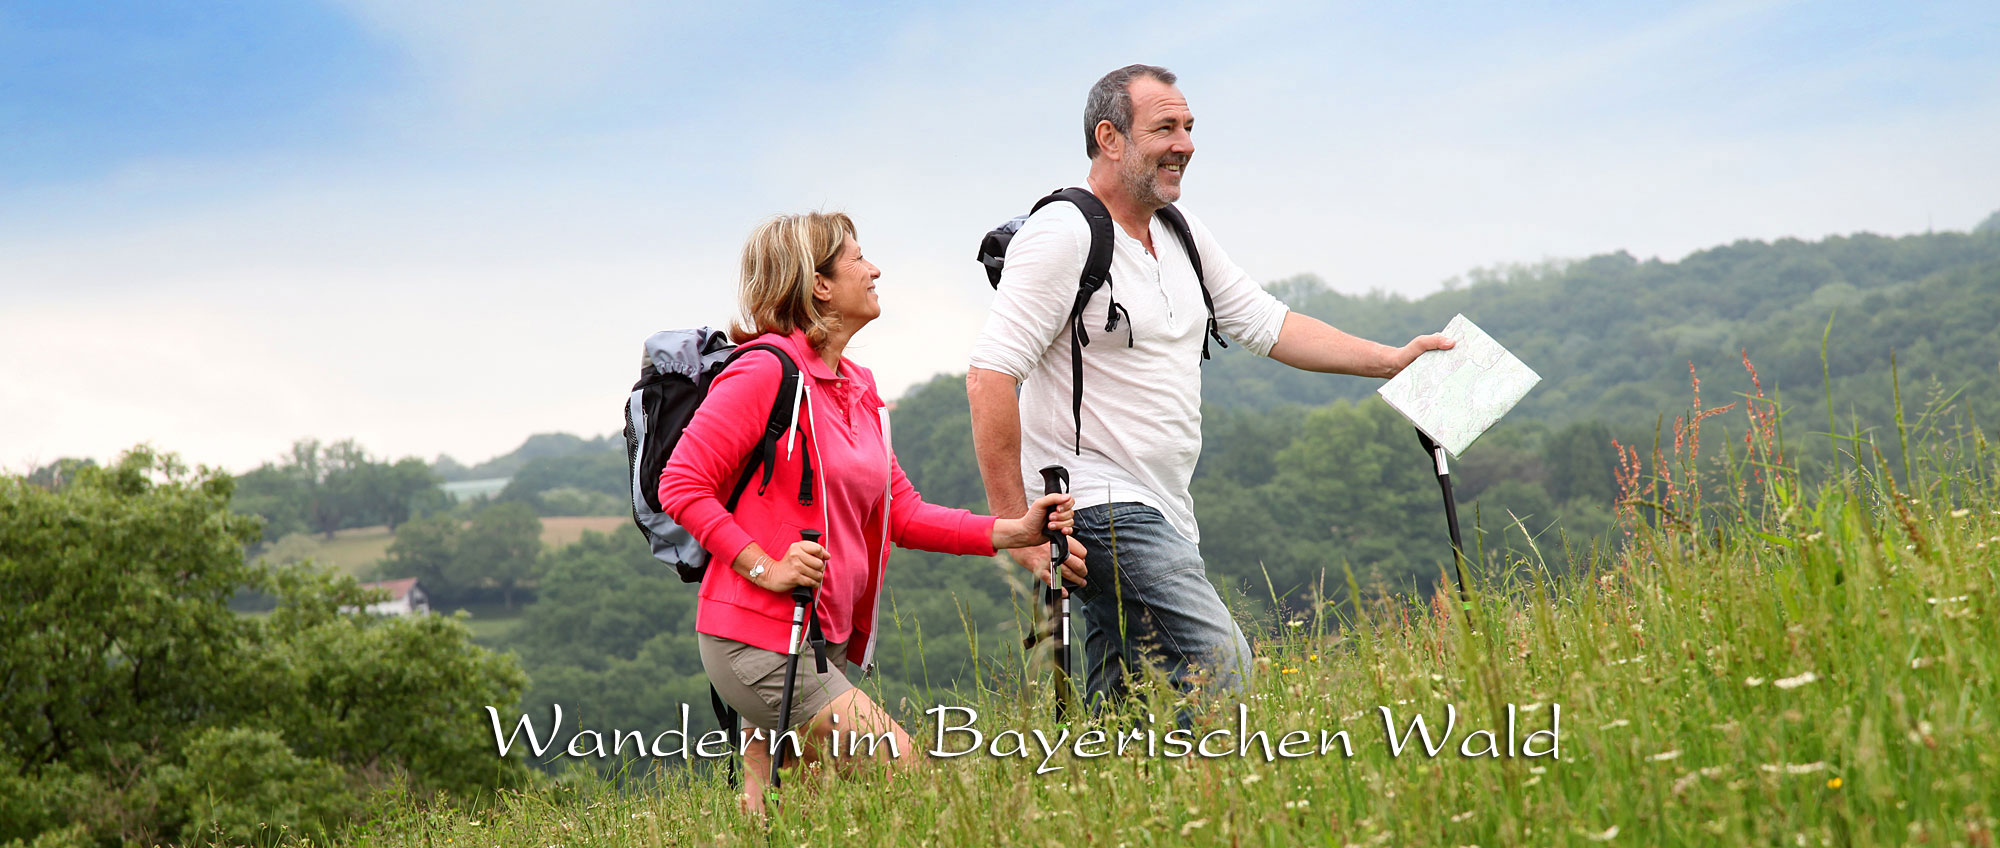 Ausflugstipps im Bayerischen Wald - Bayern